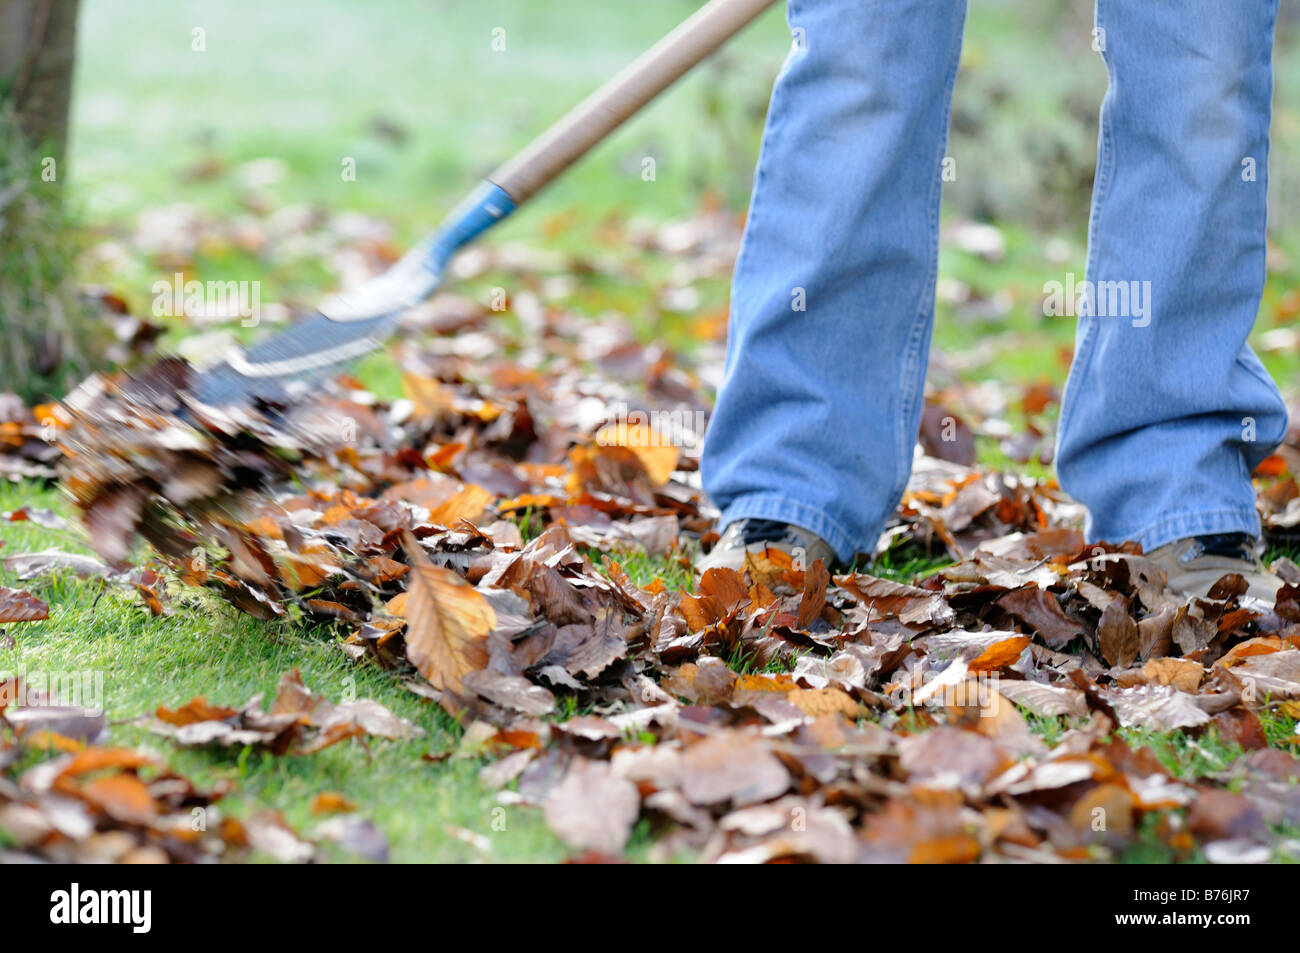 Gardener raking leaves on lawn close up shot showing gardeners legs feet UK December Stock Photo